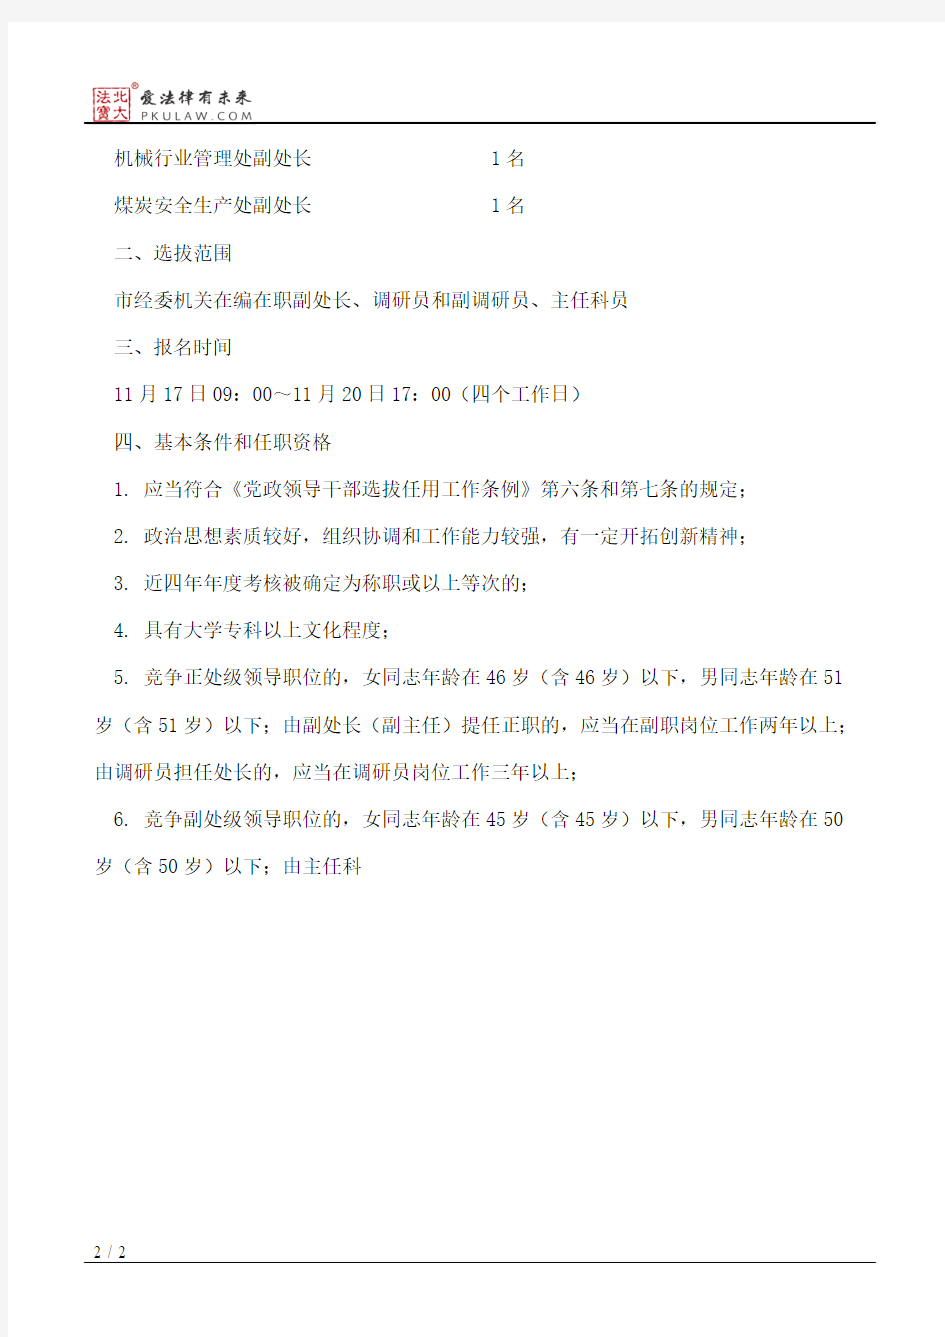 重庆市经济和信息化委员会关于市经委机关部分处级领导职位实行竞